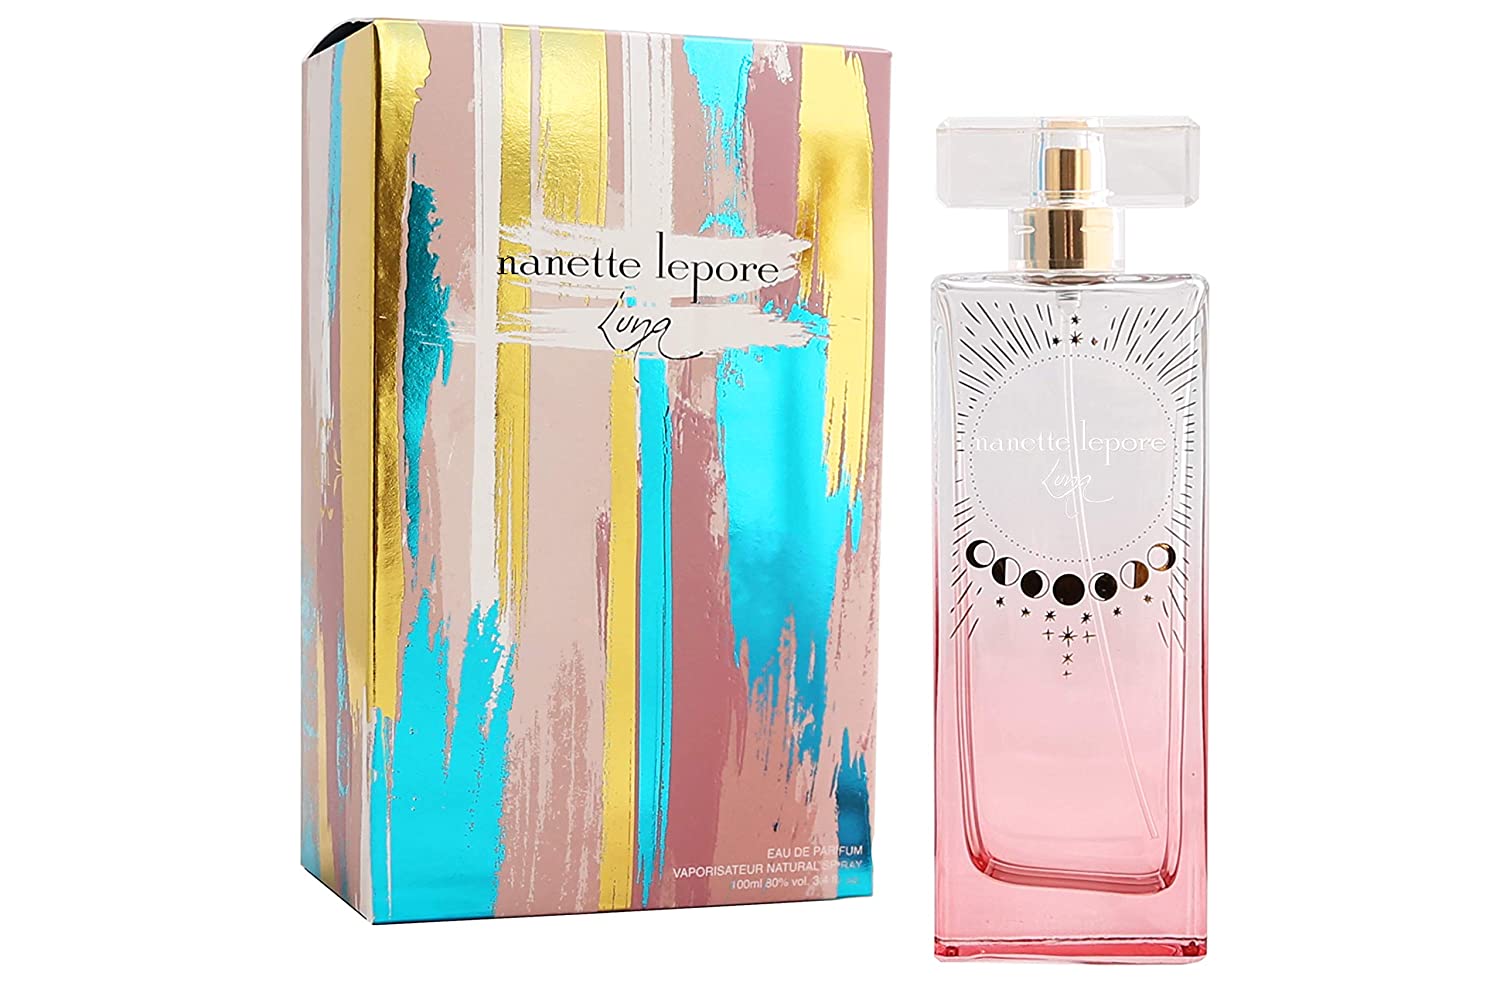 Nanette Lepore Luna by Nanette Lepore Women 3.4 oz Eau de Parfum Spray | FragranceBaba.com